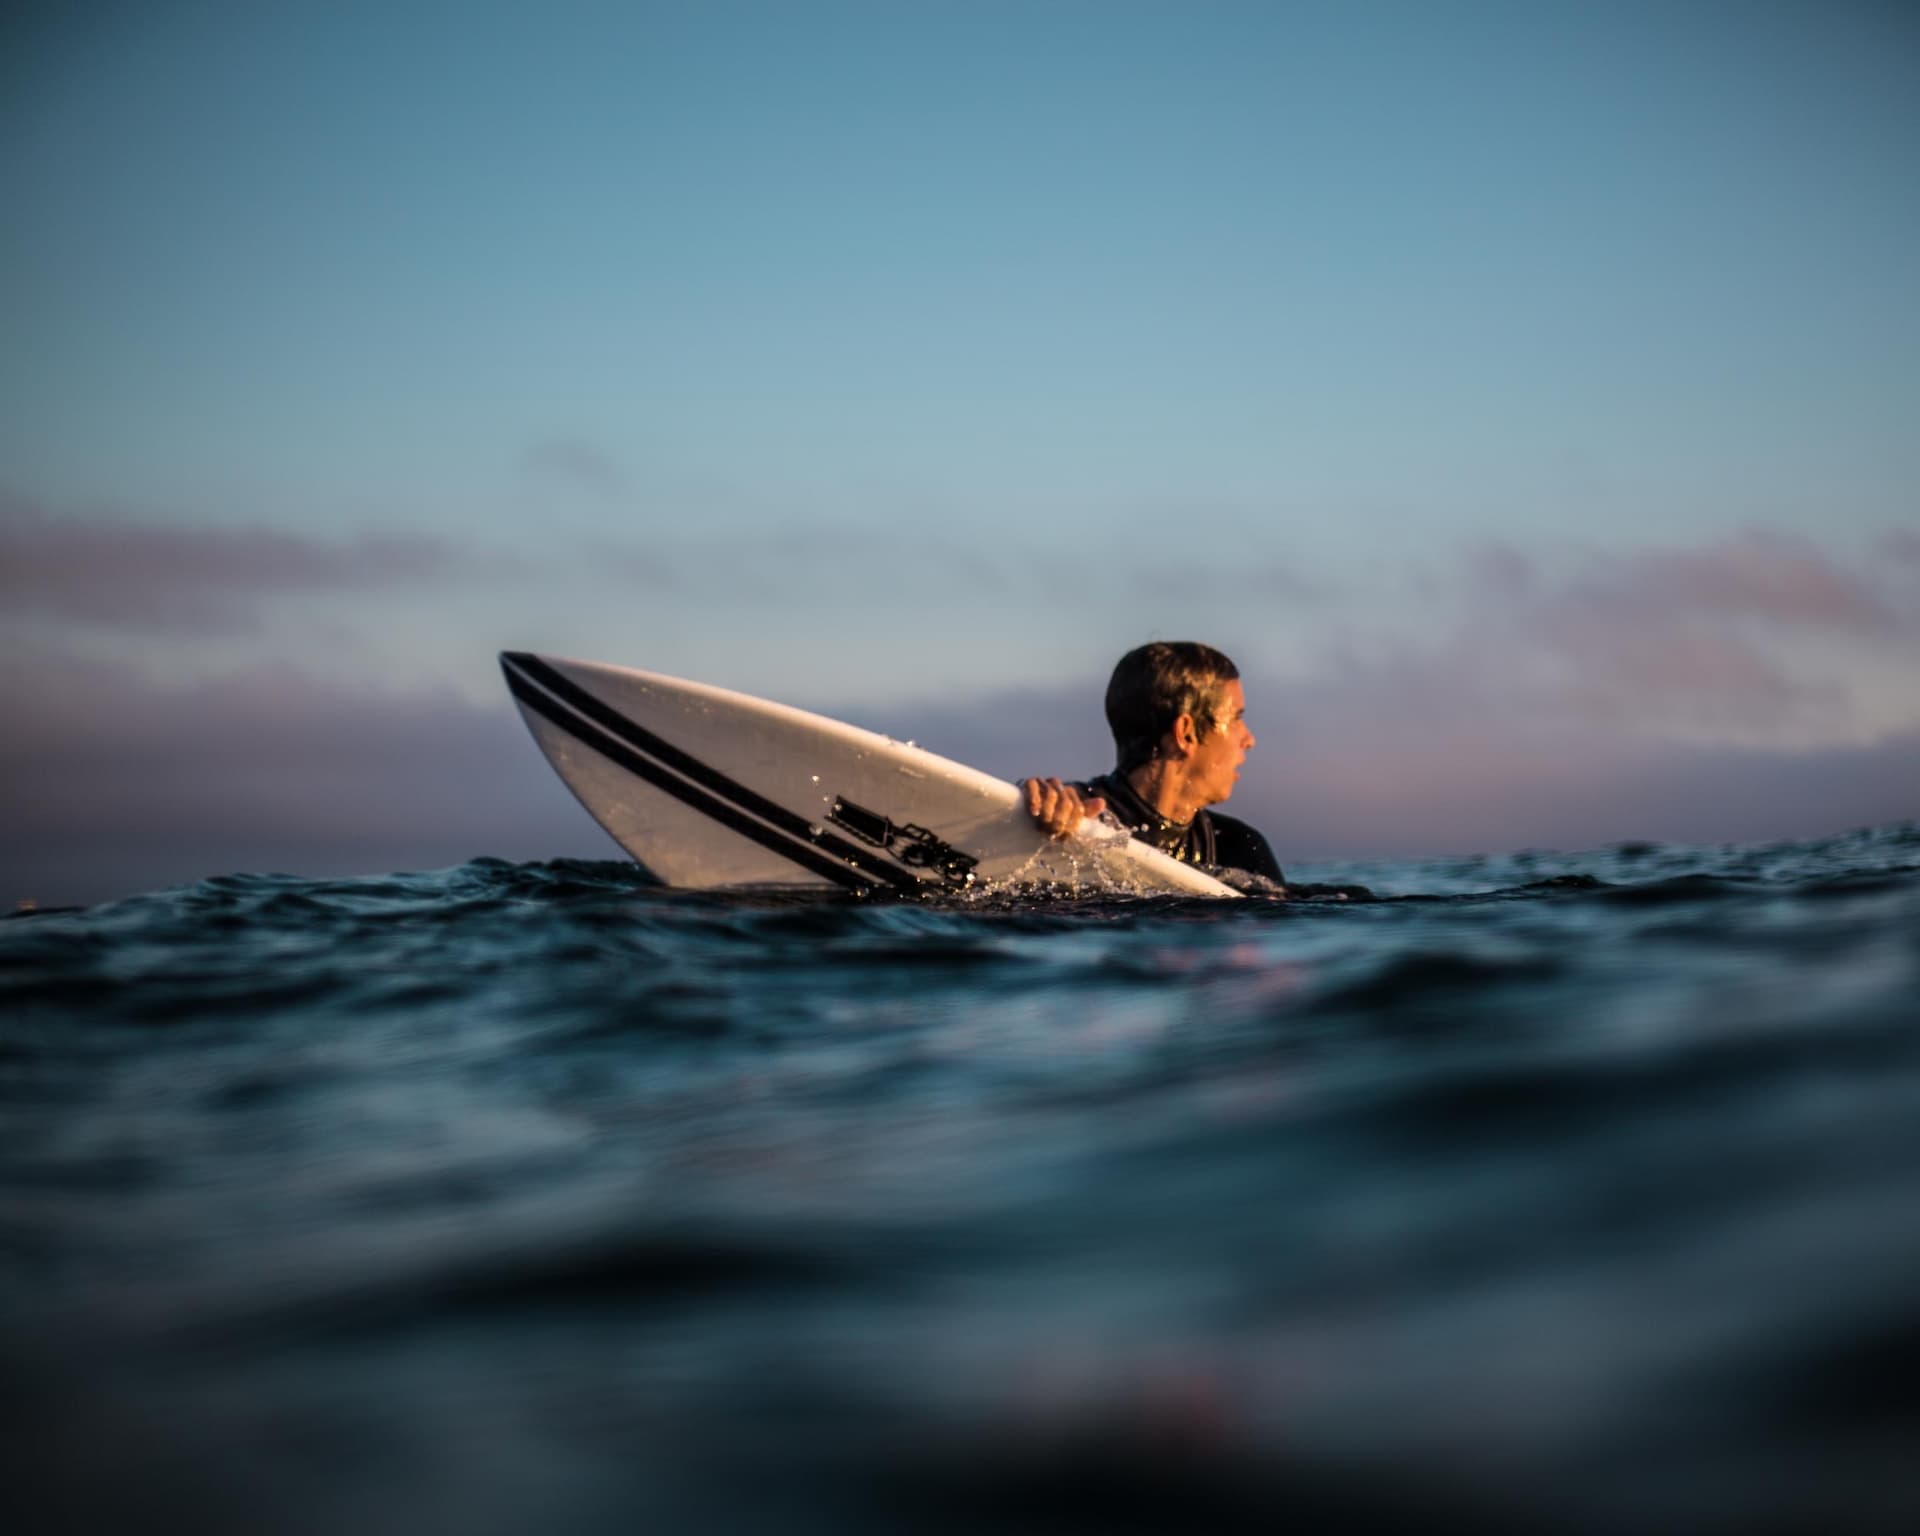 Surfing lesson in Costa da Caparica 